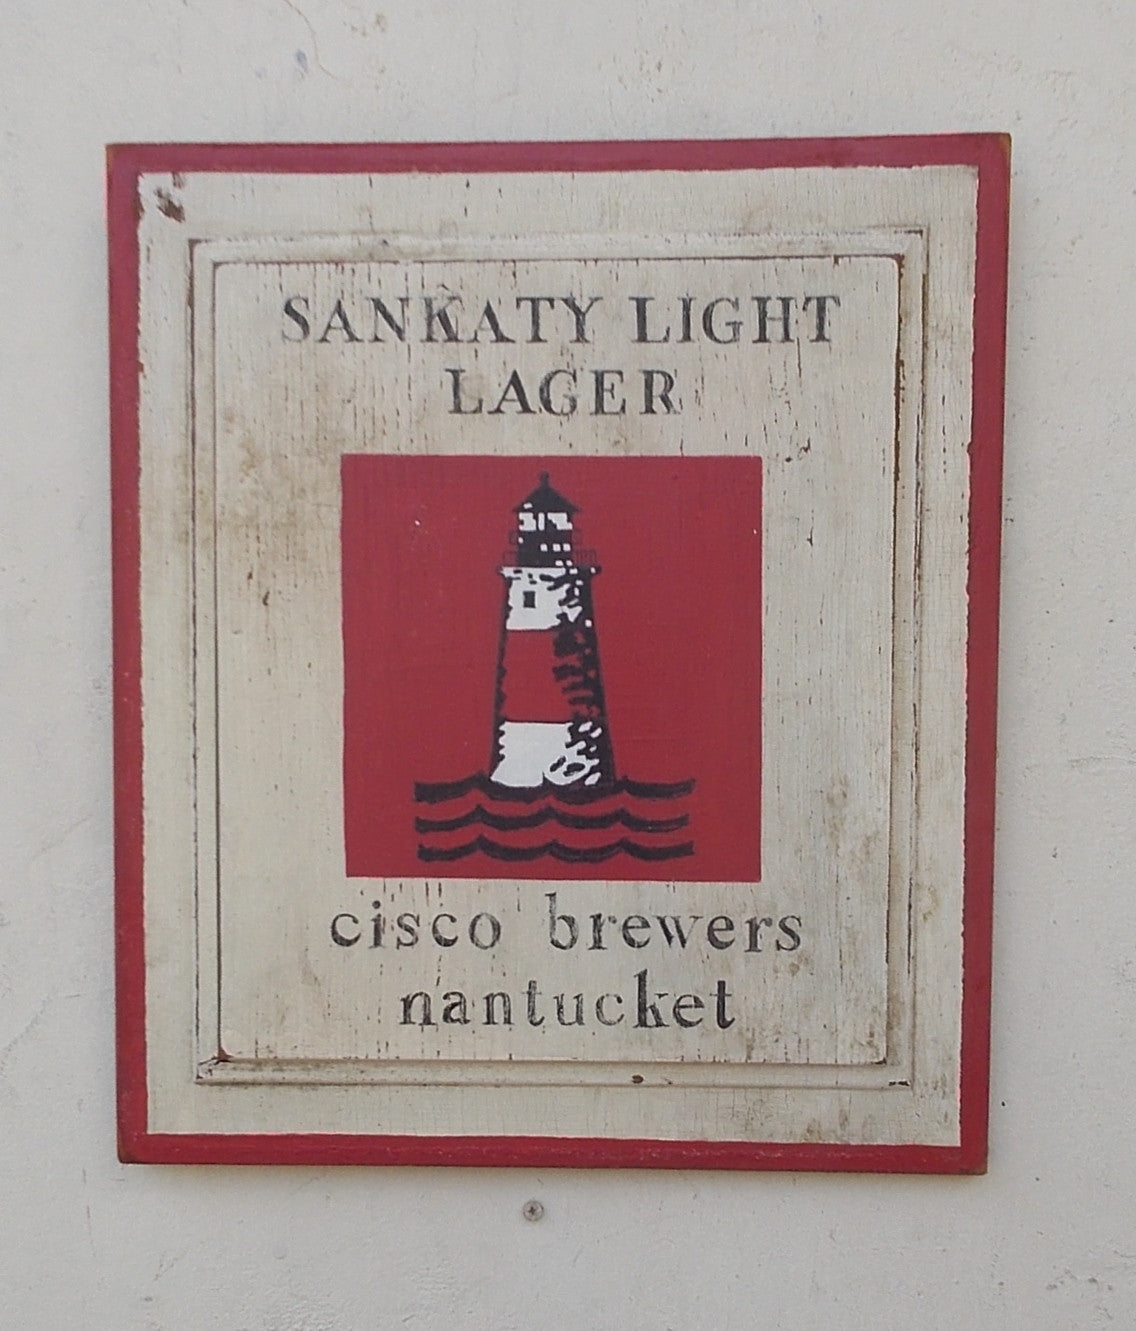 Sankaty Light Lager